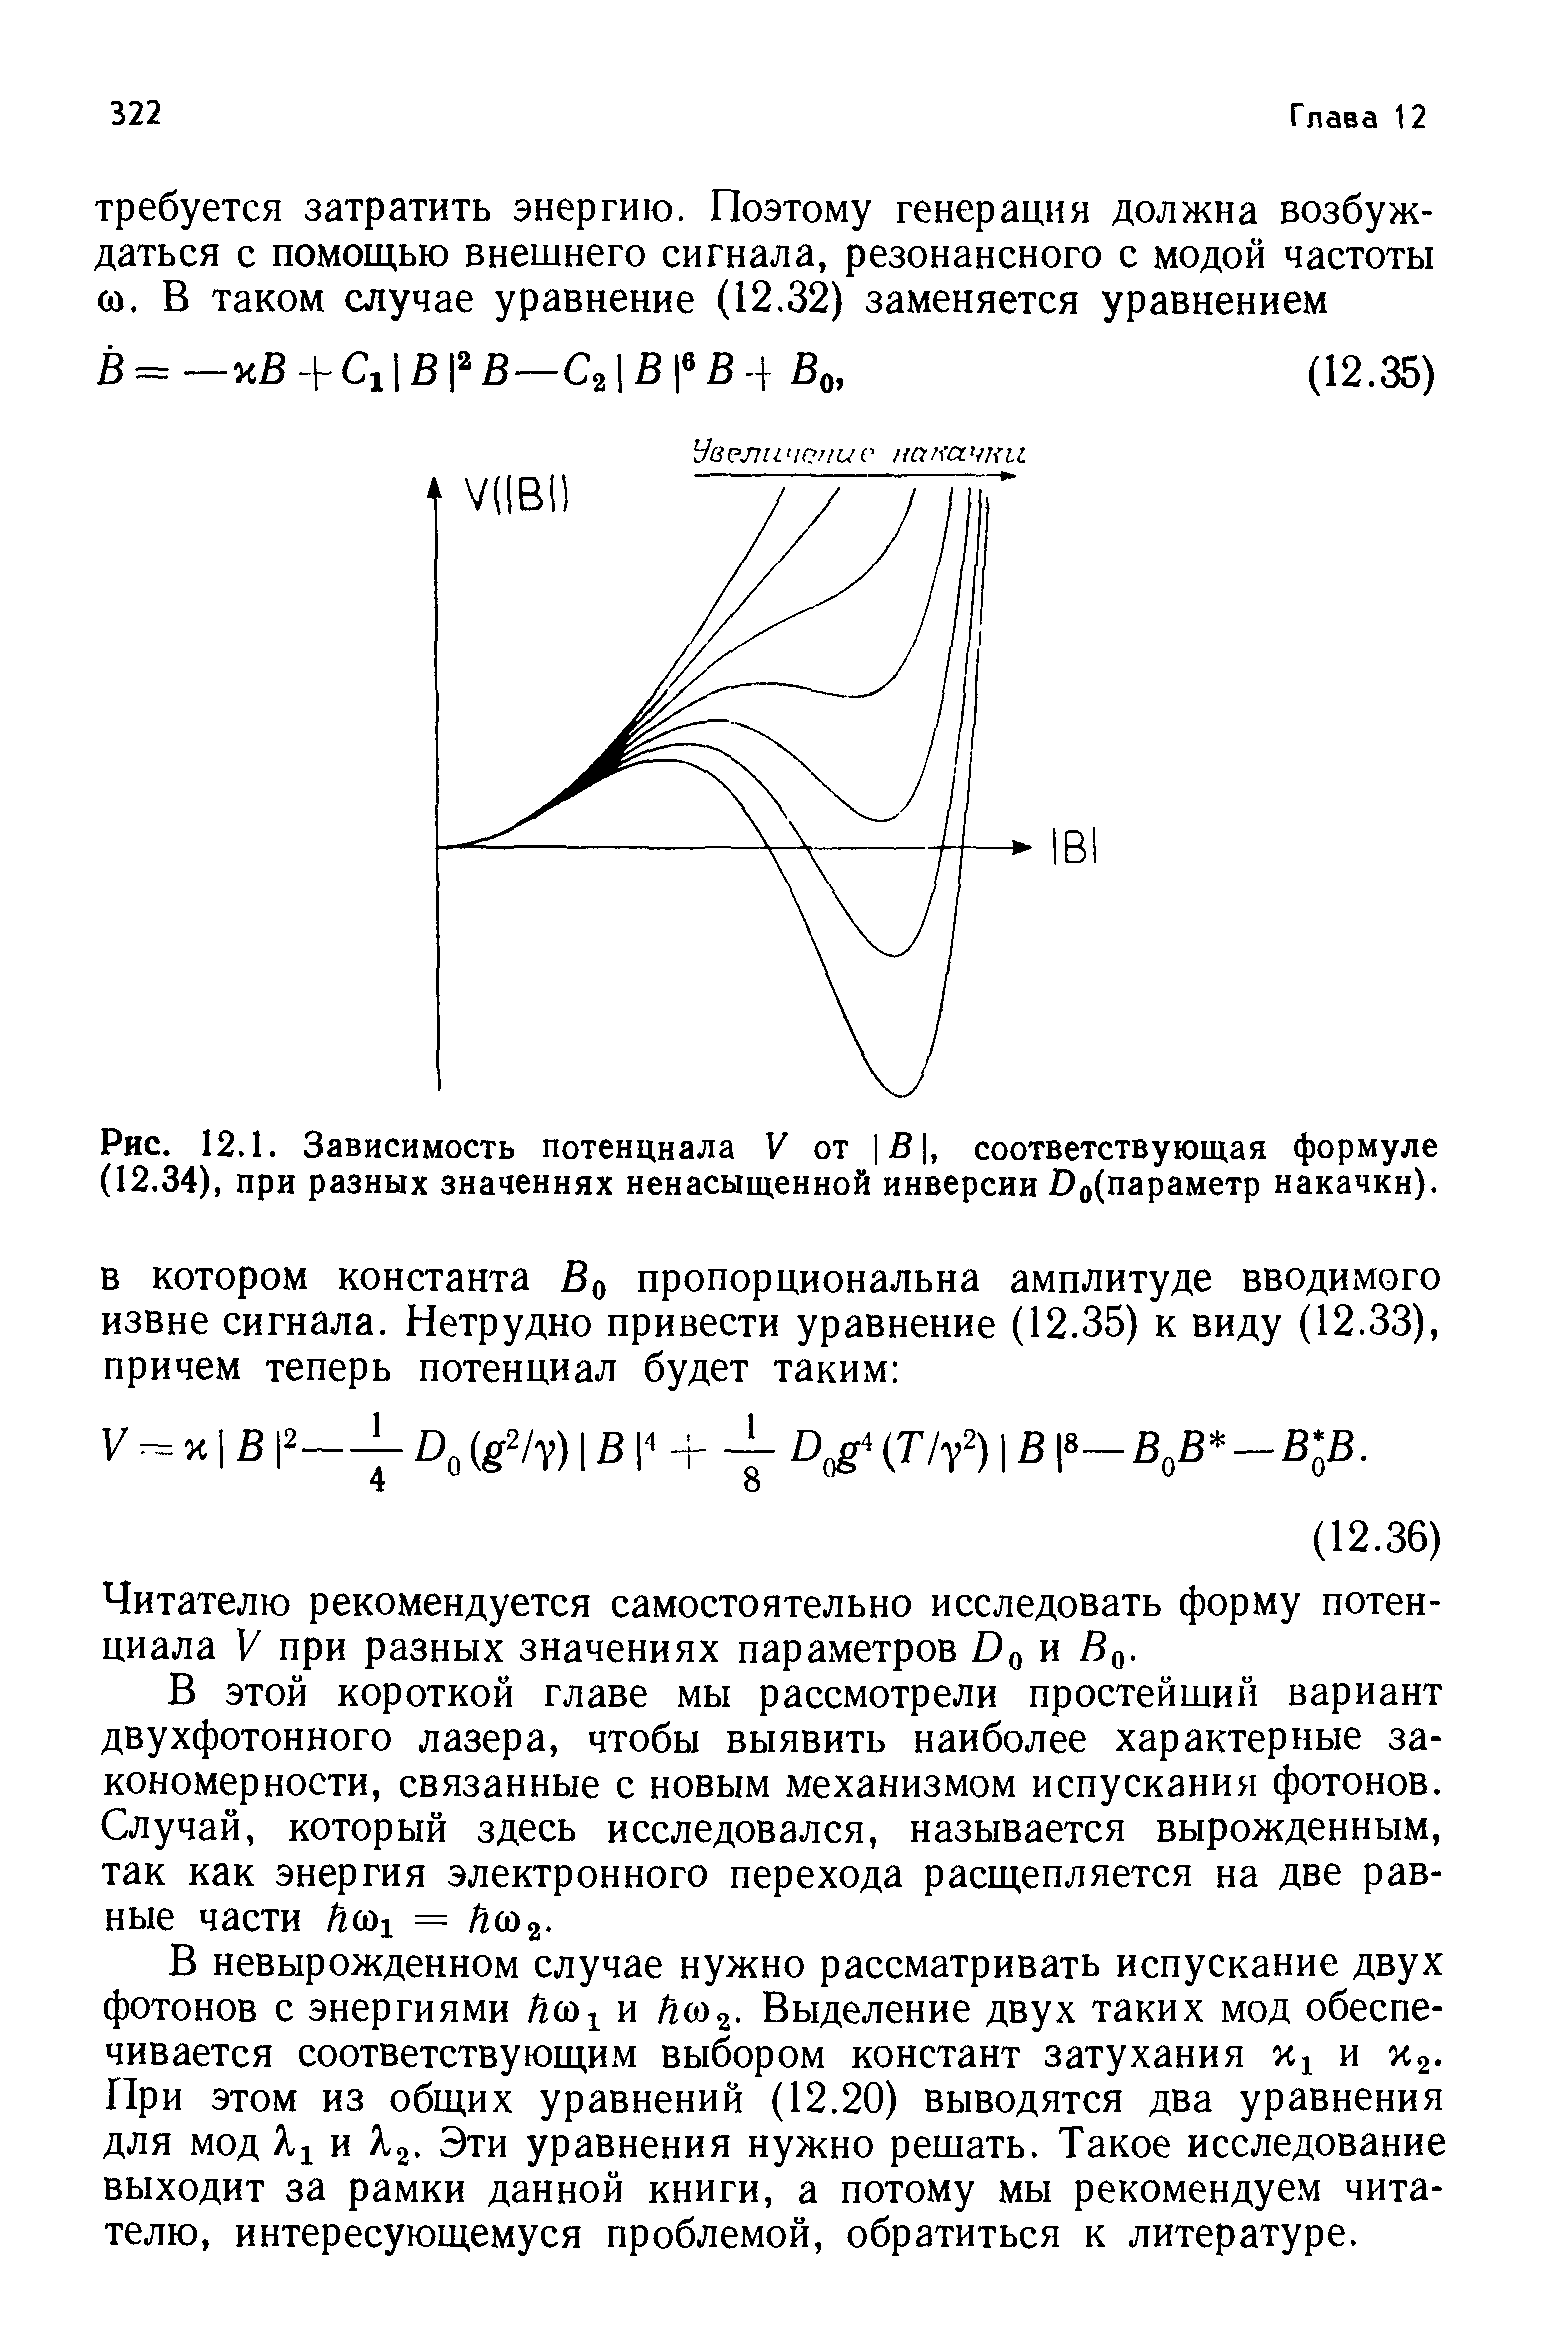 Рис. 12.1. Зависимость потенциала V от В , соответствующая формуле (12.34), при разных значениях ненасыщенной инверсии Оо(параметр накачки).
